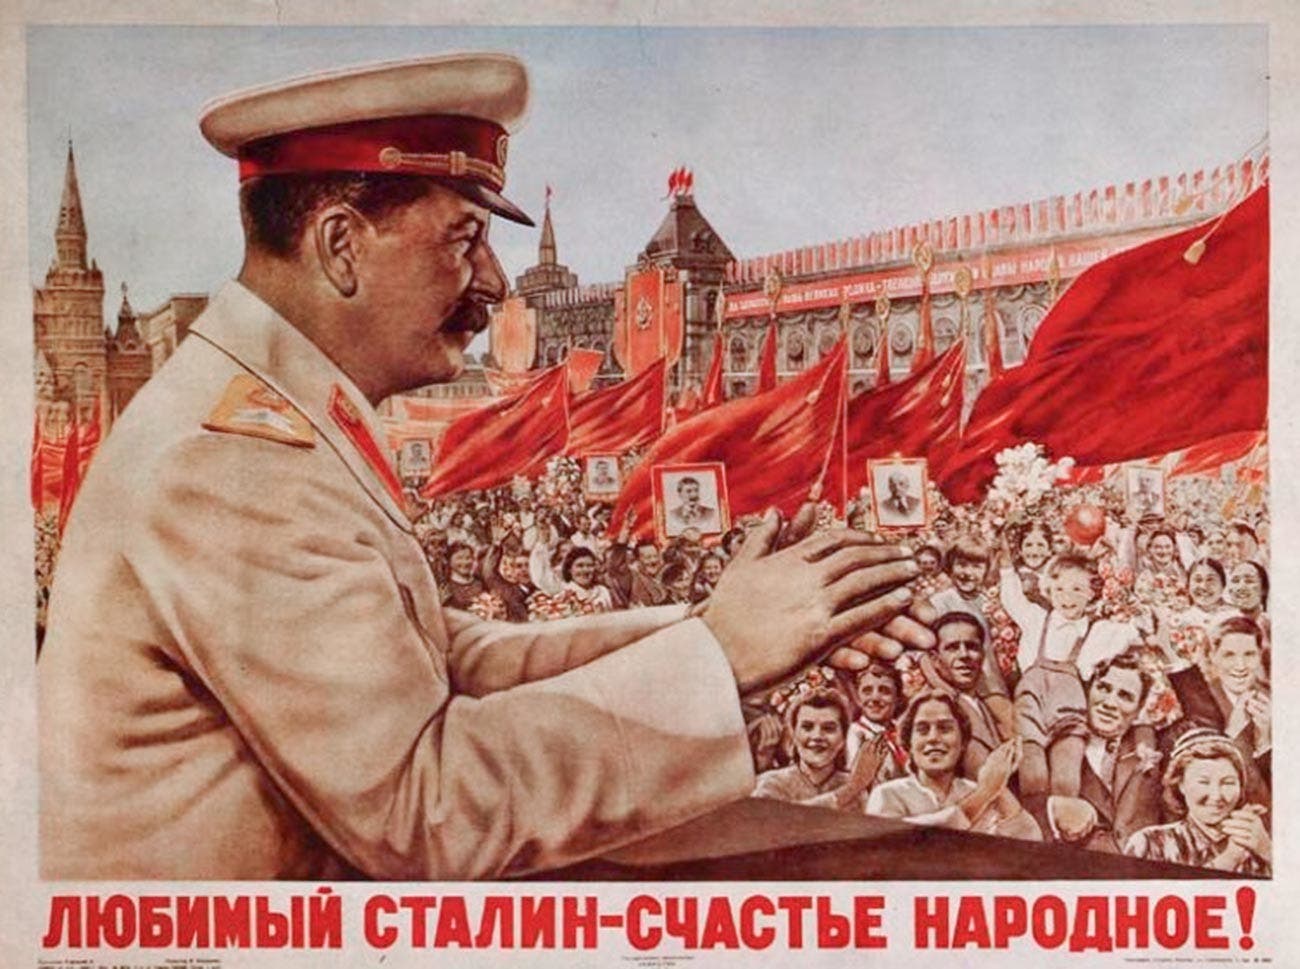 صورة دعائية سوفيتية تبرز ستالين كشخصية محبوبة بالاتحاد السوفيتي